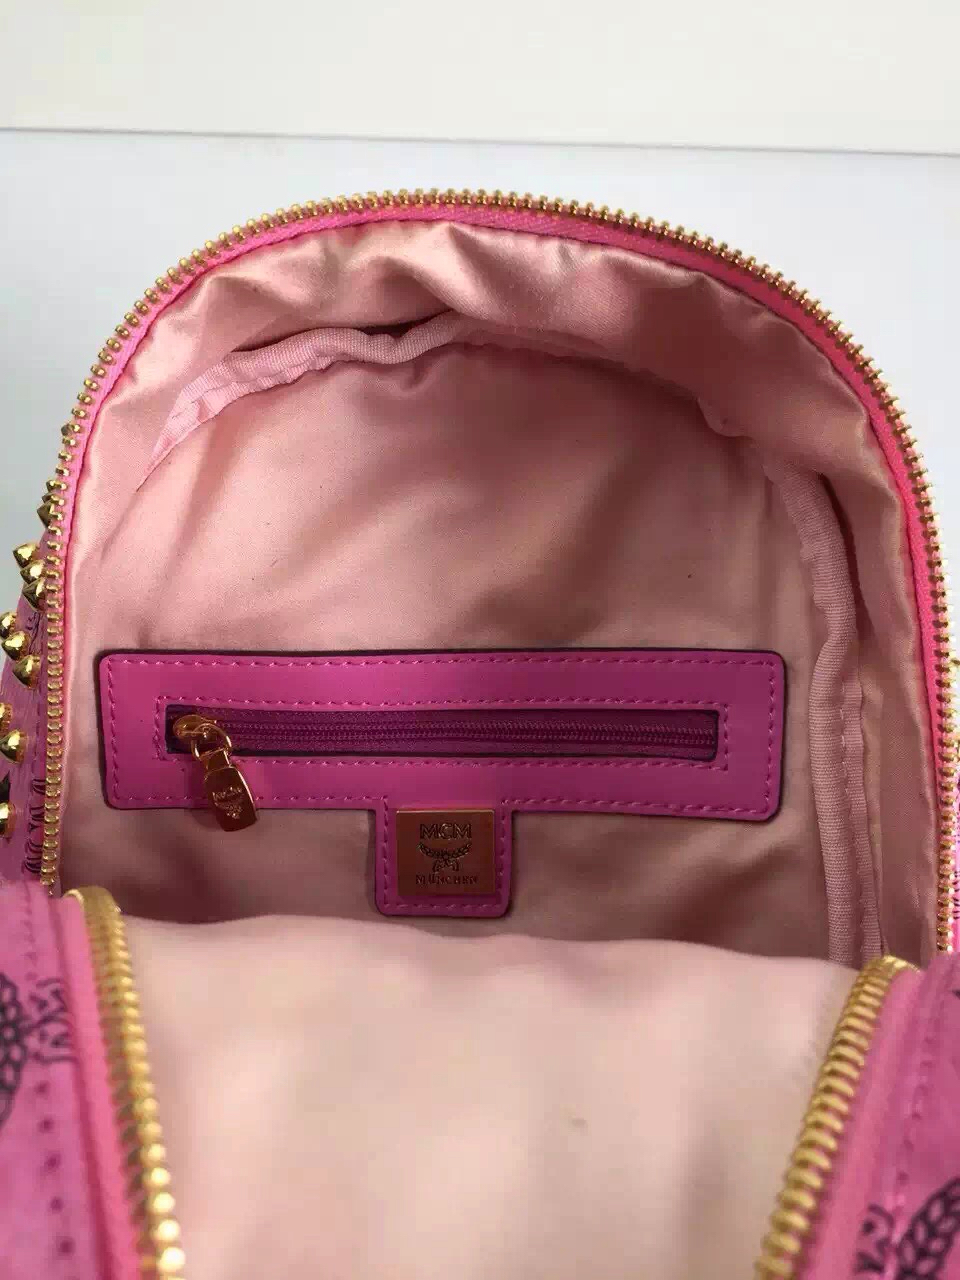 MCM限量版双肩包 一件代发 专柜全包装 粉色原单品质 双肩包背包批发